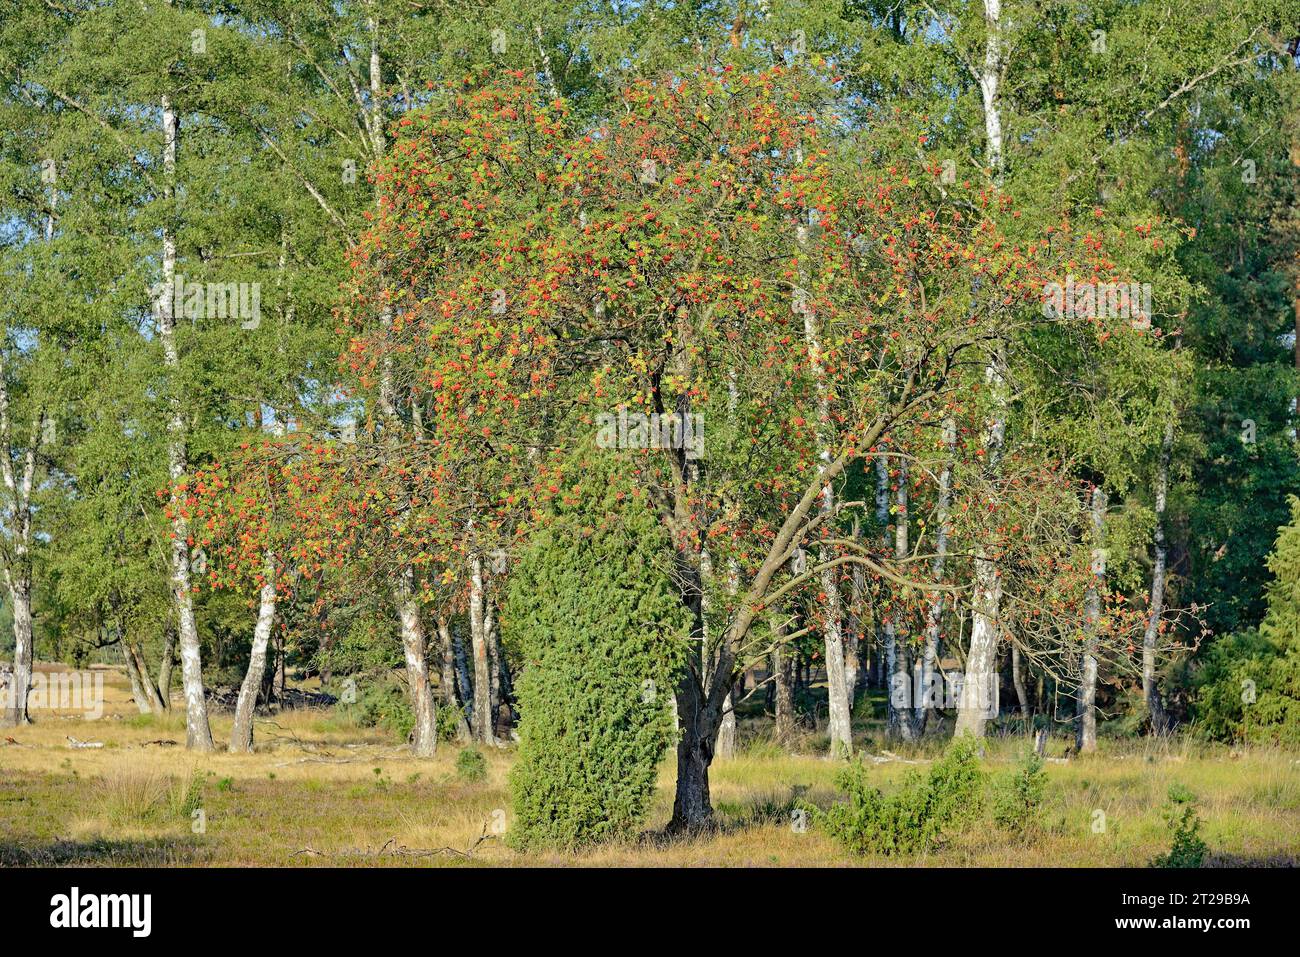 Heath landscape, typical vegetation, european rowan (Sorbus aucuparia), juniper (Juniperus communis) and flowering common heather (Calluna Vulgaris) Stock Photo